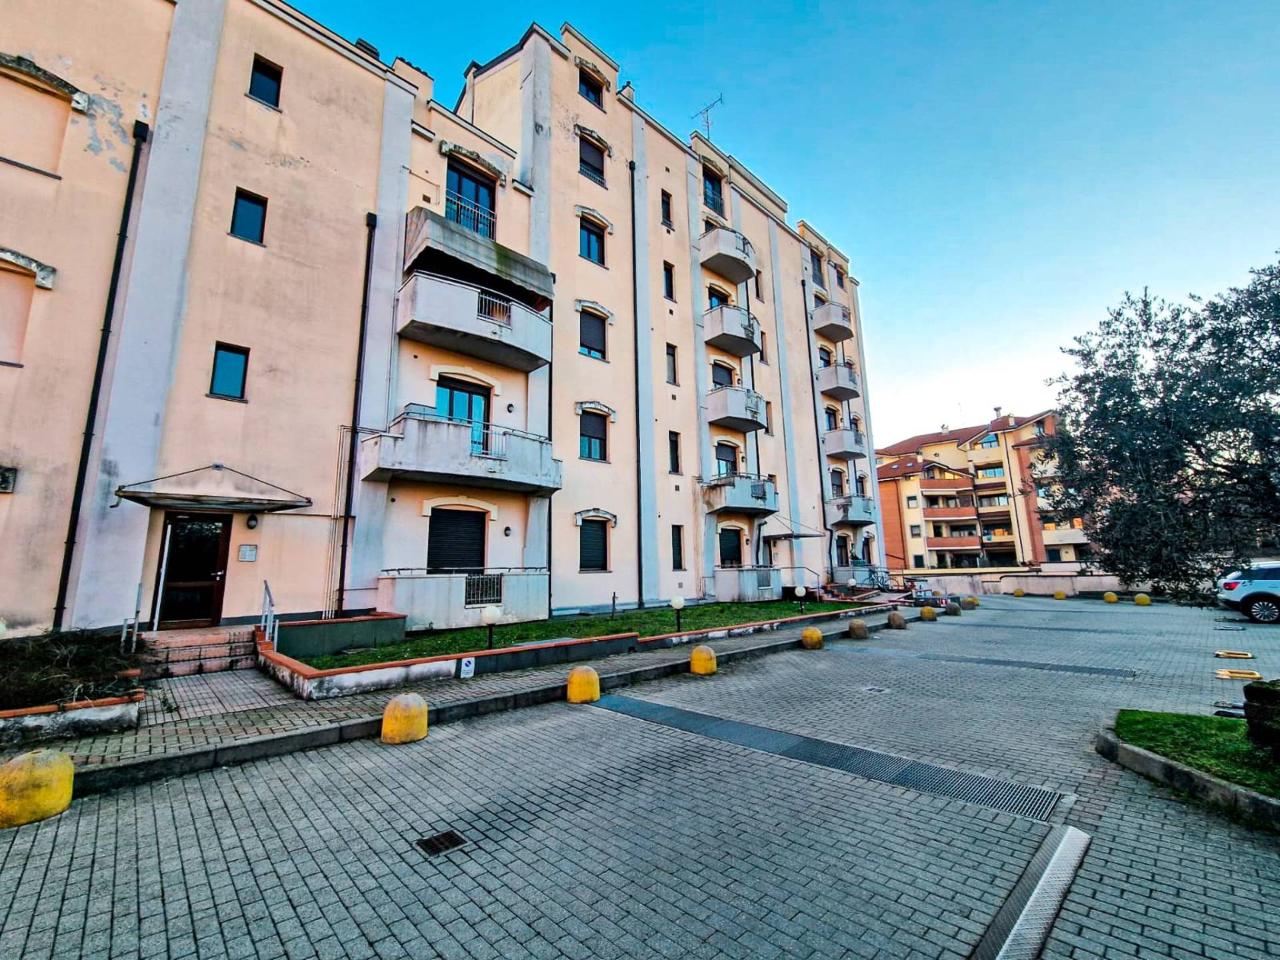 Appartamento in vendita a Castellanza